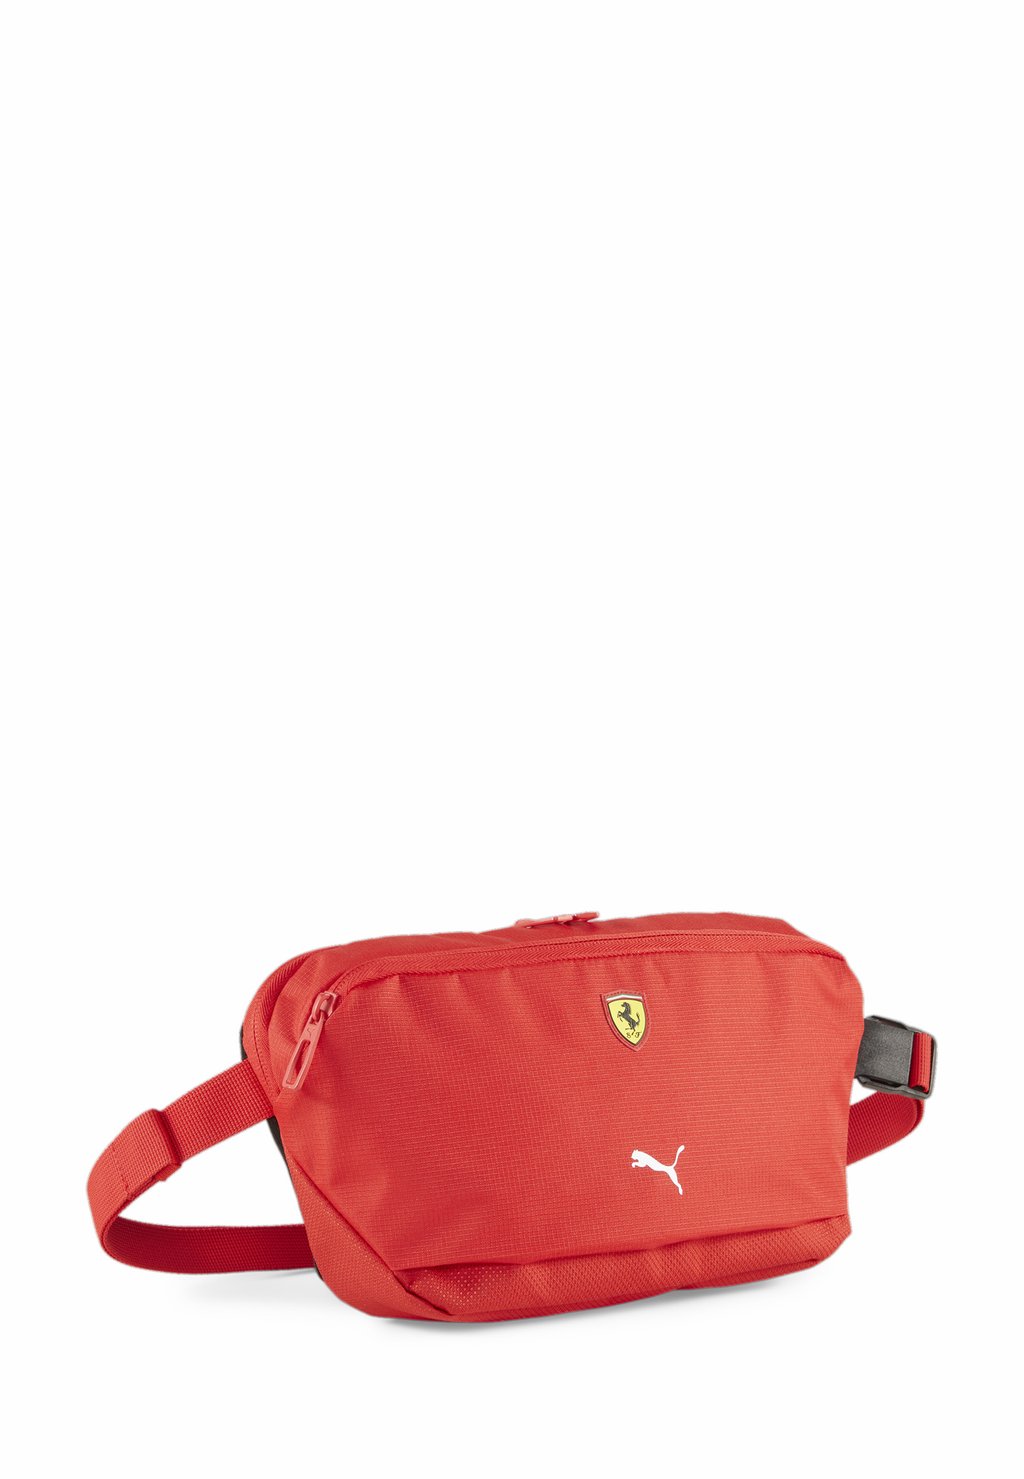 Поясная сумка Scuderia Ferrari Race Motorsport Puma, цвет rosso corsa фотографии